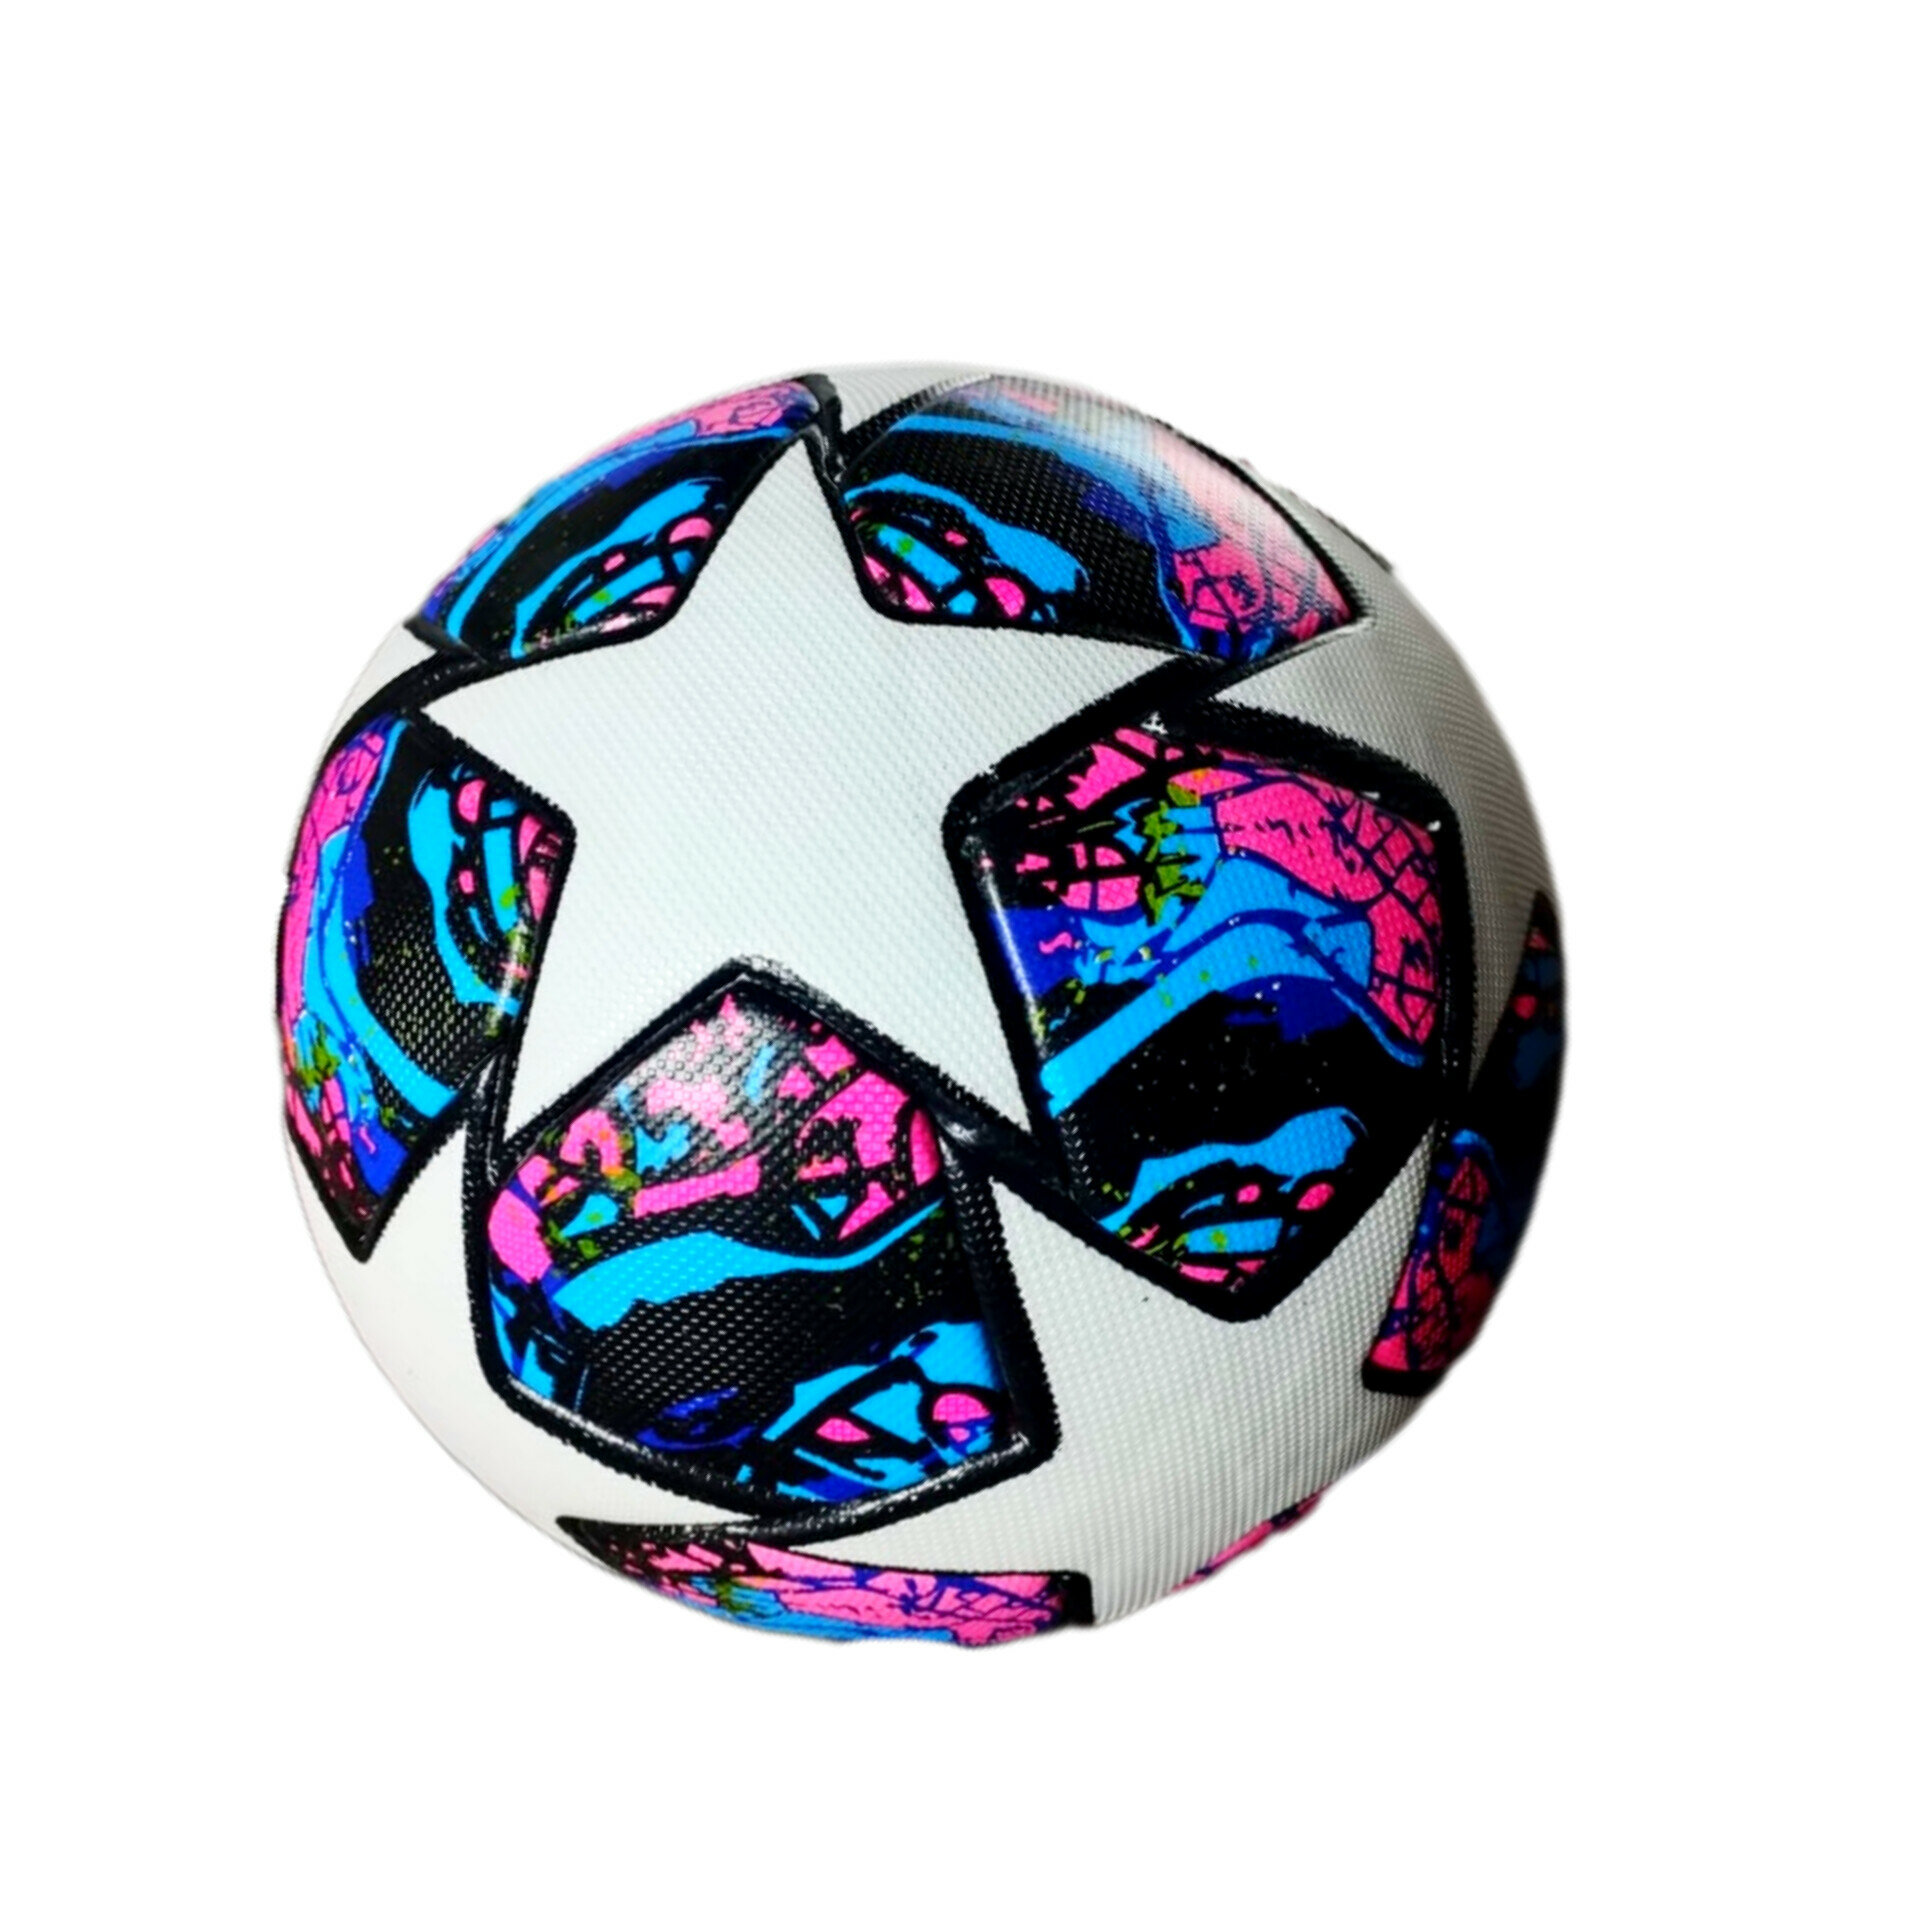 Мяч футбольный Стамбул 2020, лига чемпионов, размер 5, термосклейка